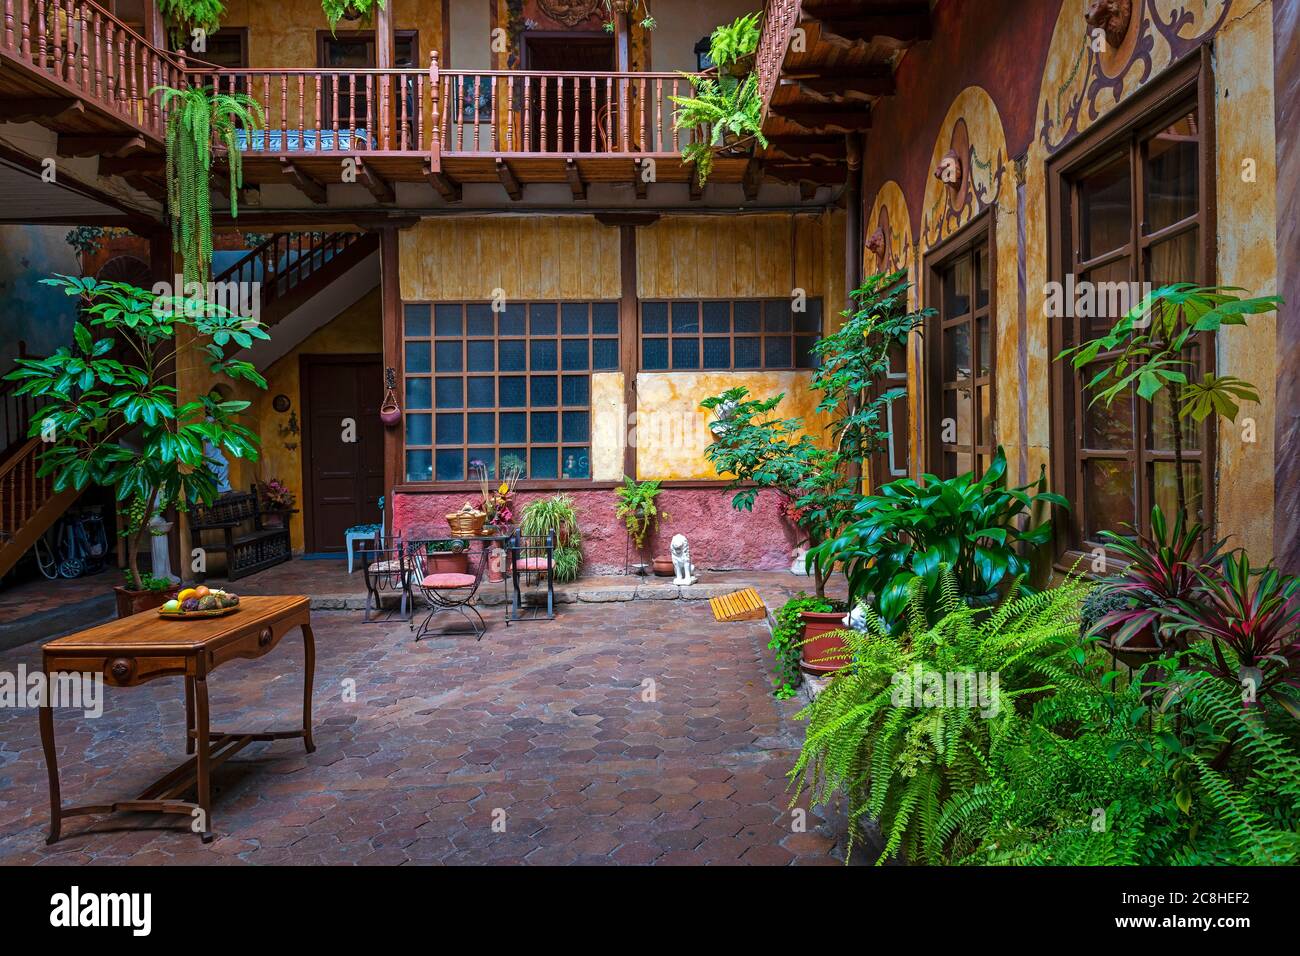 Architecture de style colonial d'un patio intérieur à Cuenca, Equateur. Concentrez-vous sur le mur à l'arrière. Banque D'Images